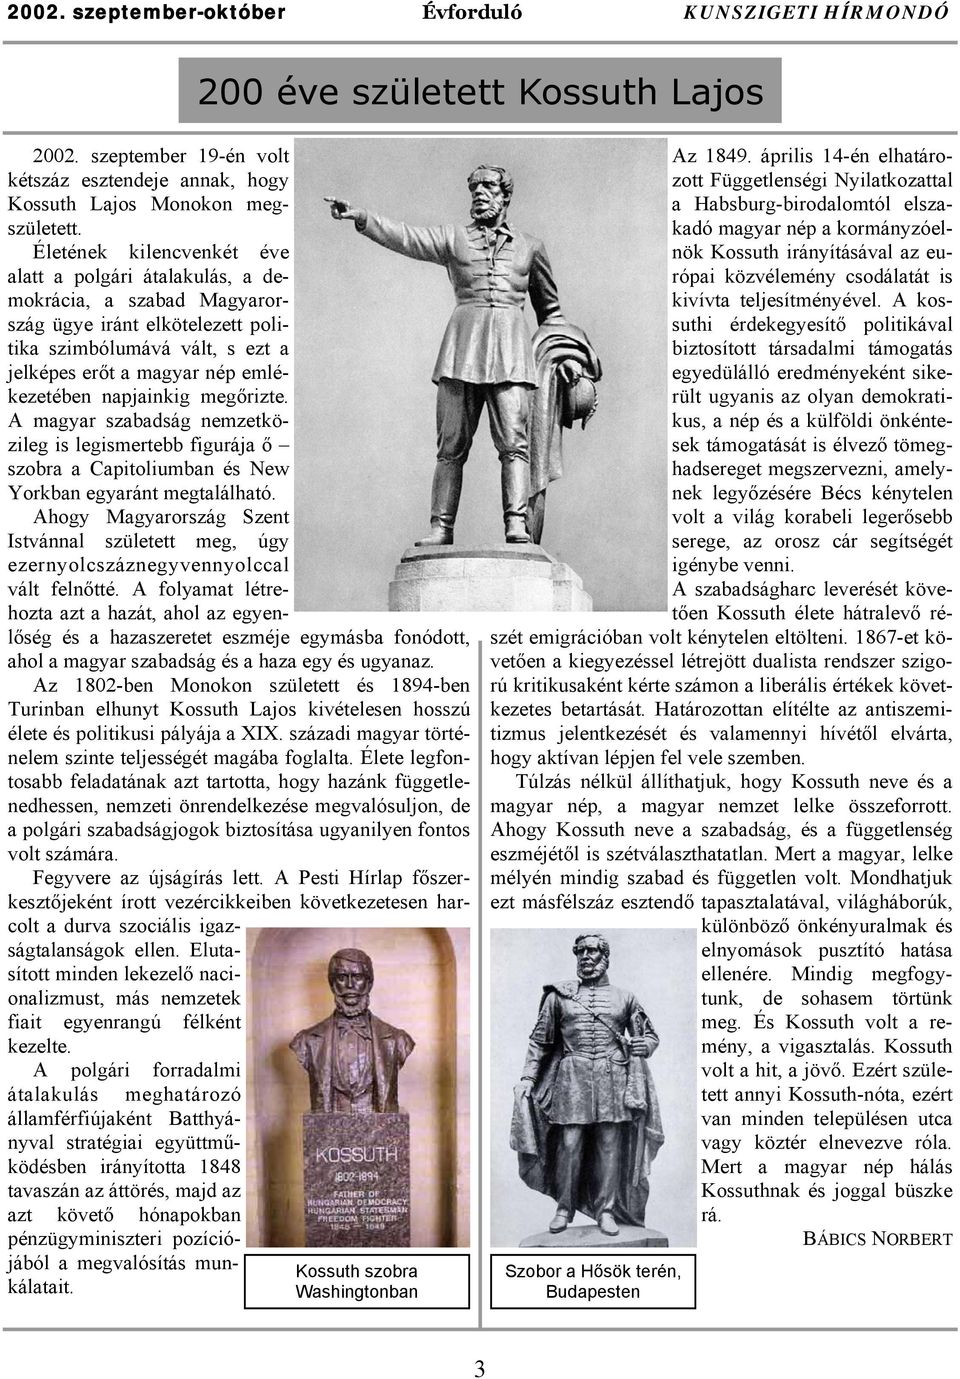 napjainkig megőrizte. A magyar szabadság nemzetközileg is legismertebb figurája ő szobra a Capitoliumban és New Yorkban egyaránt megtalálható.